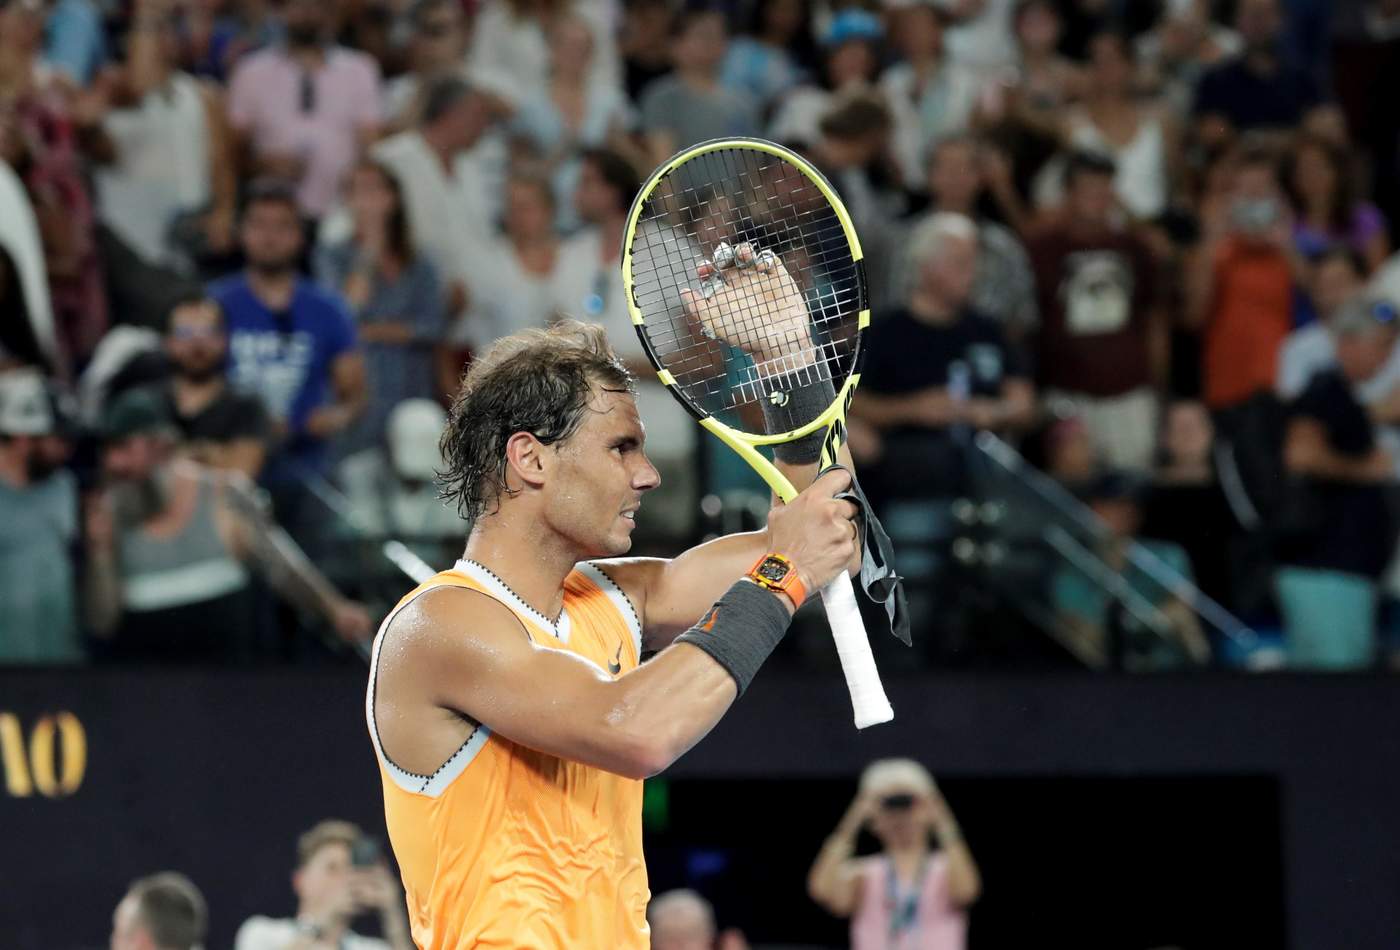 Si bien son números inigualables, a Rafael Nadal no le acomoda bien la superficie del Rod Laver Arena, en donde solamente ha ganado en una ocasión el torneo, precisamente, en 2009. (EFE)